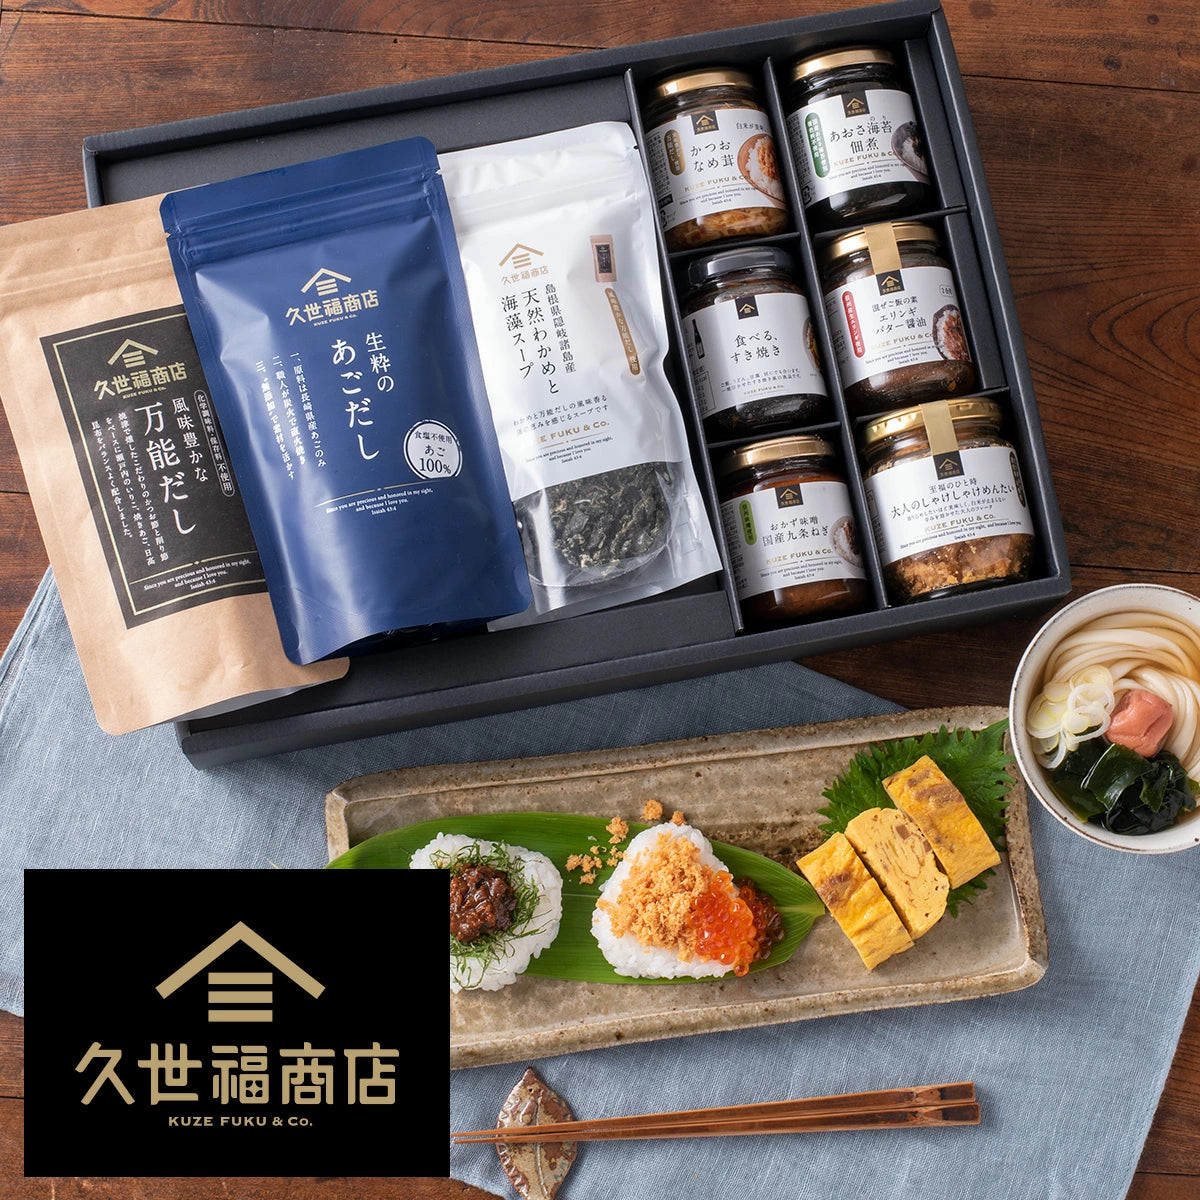 Furikake　–　Sauce　Topping　Rice　Miso　Soy　Box　Food　Gift　Seasoning　Japanese　StudioTokyo